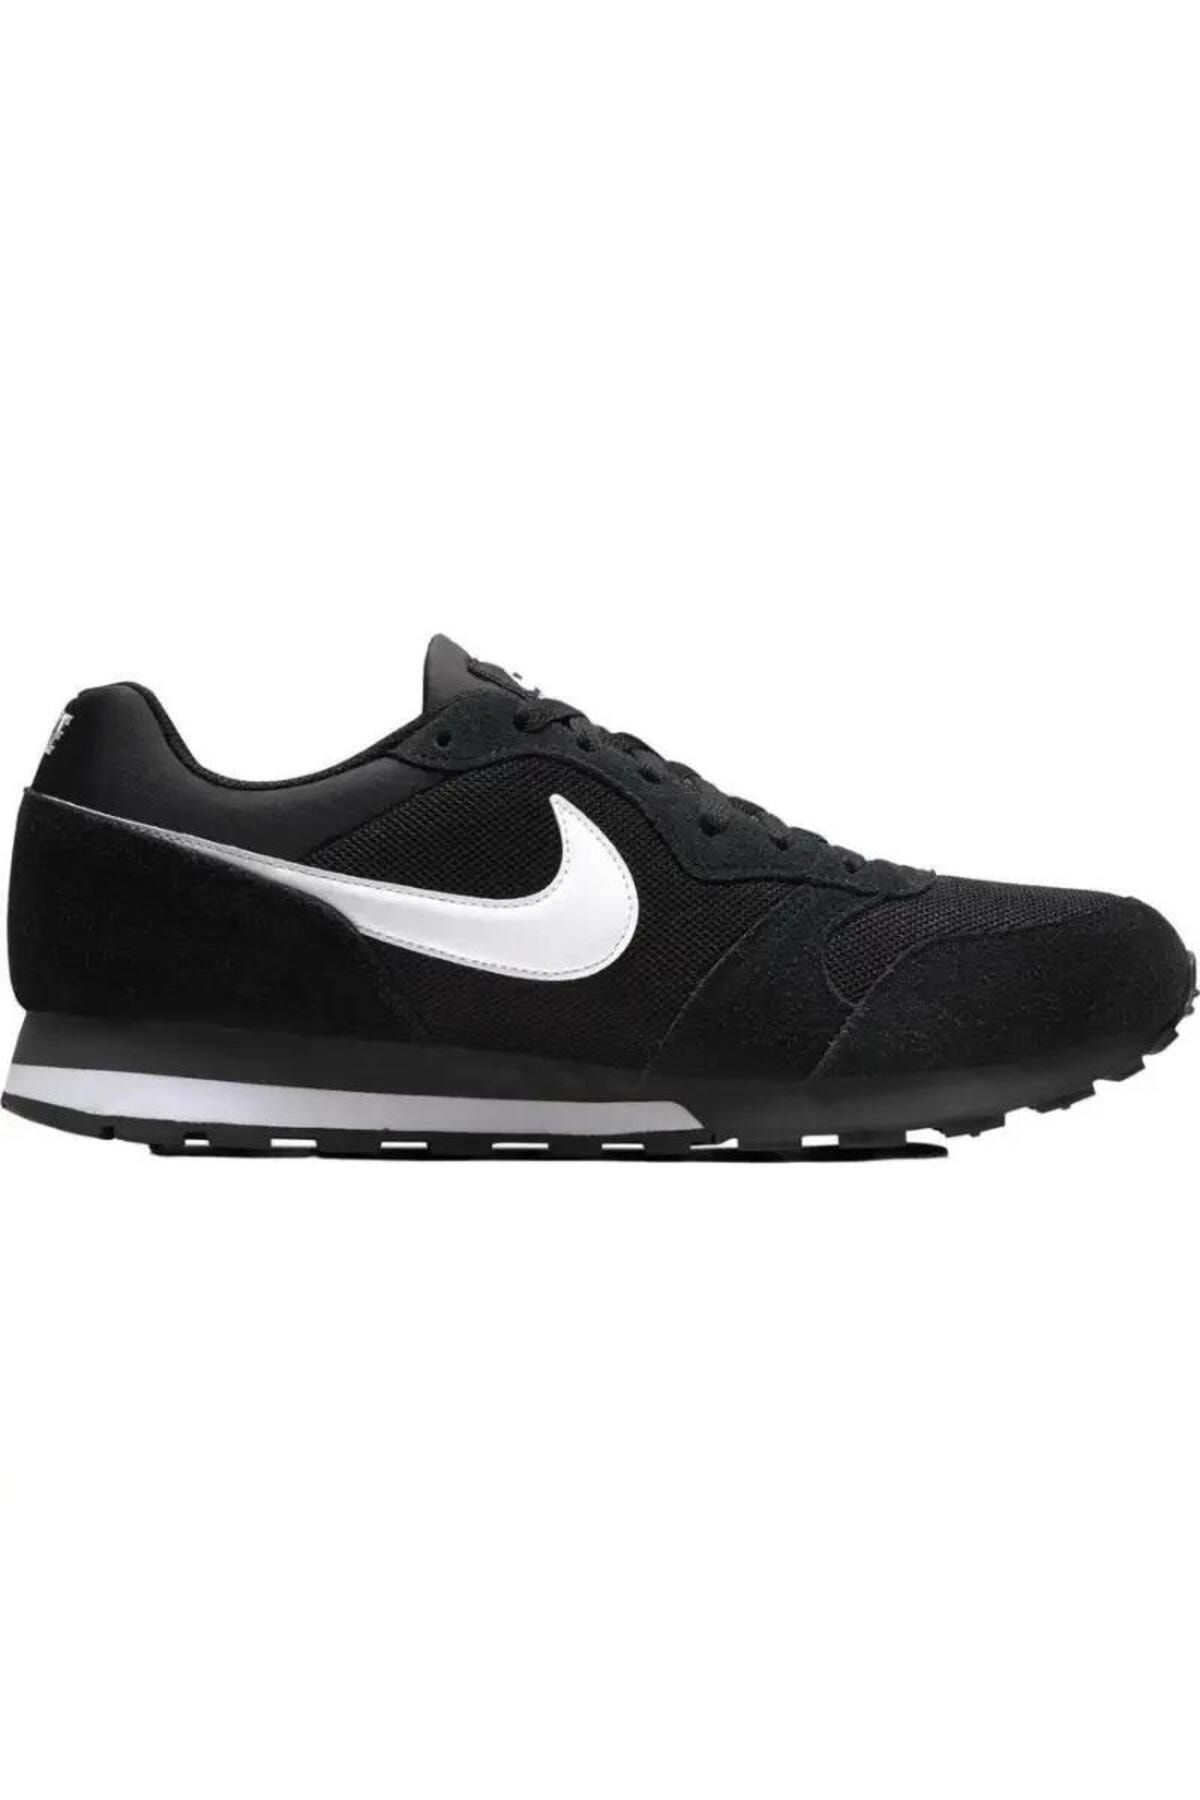 Nike 749794-010 Md Runner 2 Erkek Günlük Spor Ayakkabı